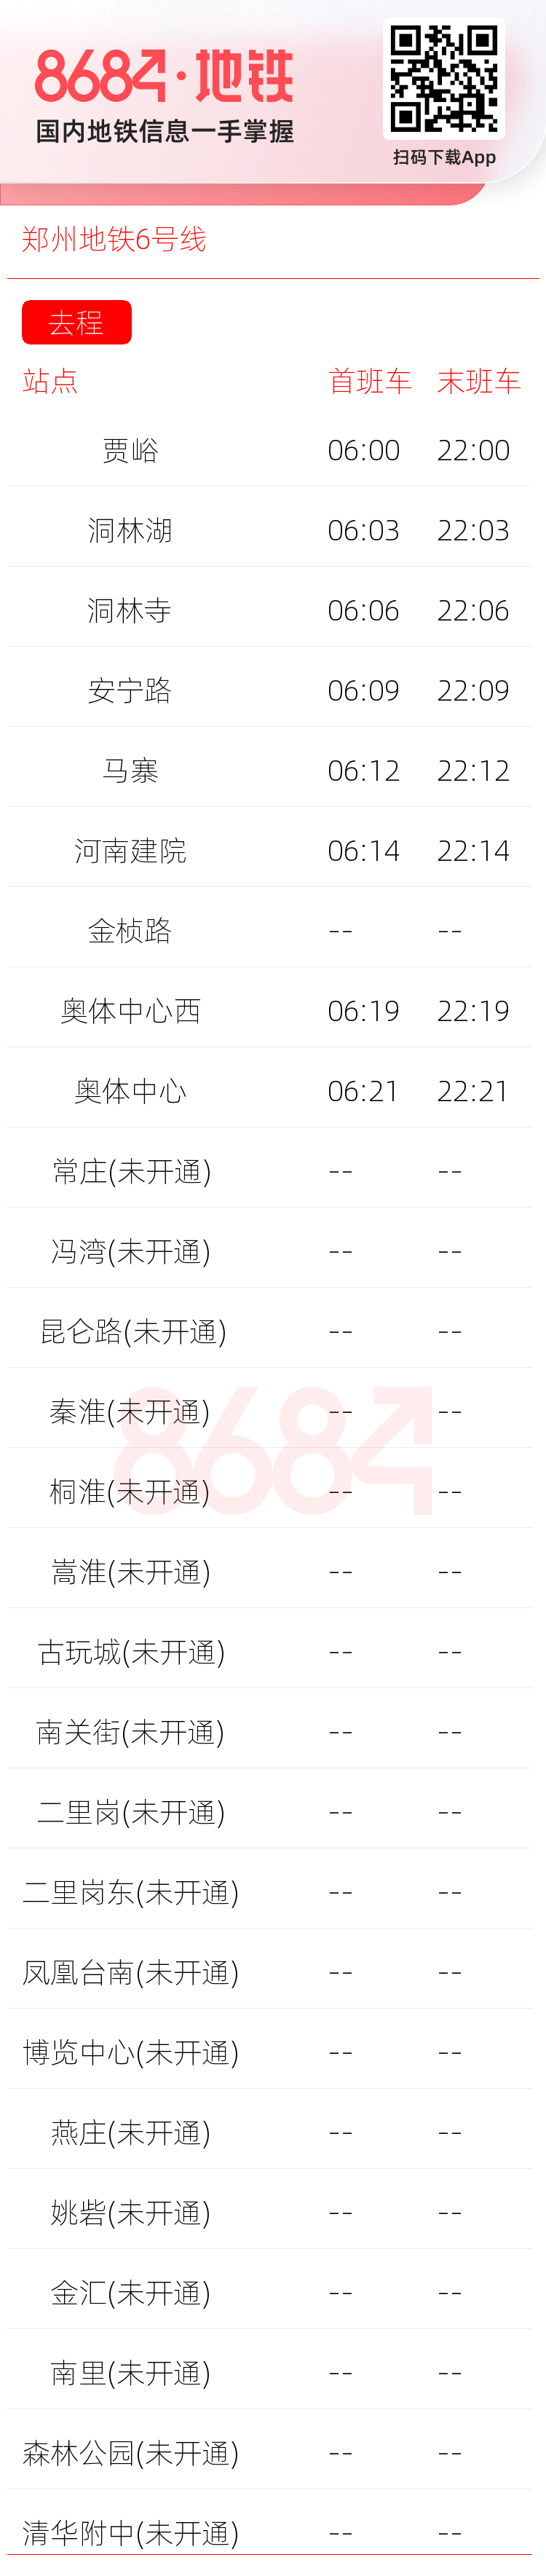 郑州地铁6号线运营时间表